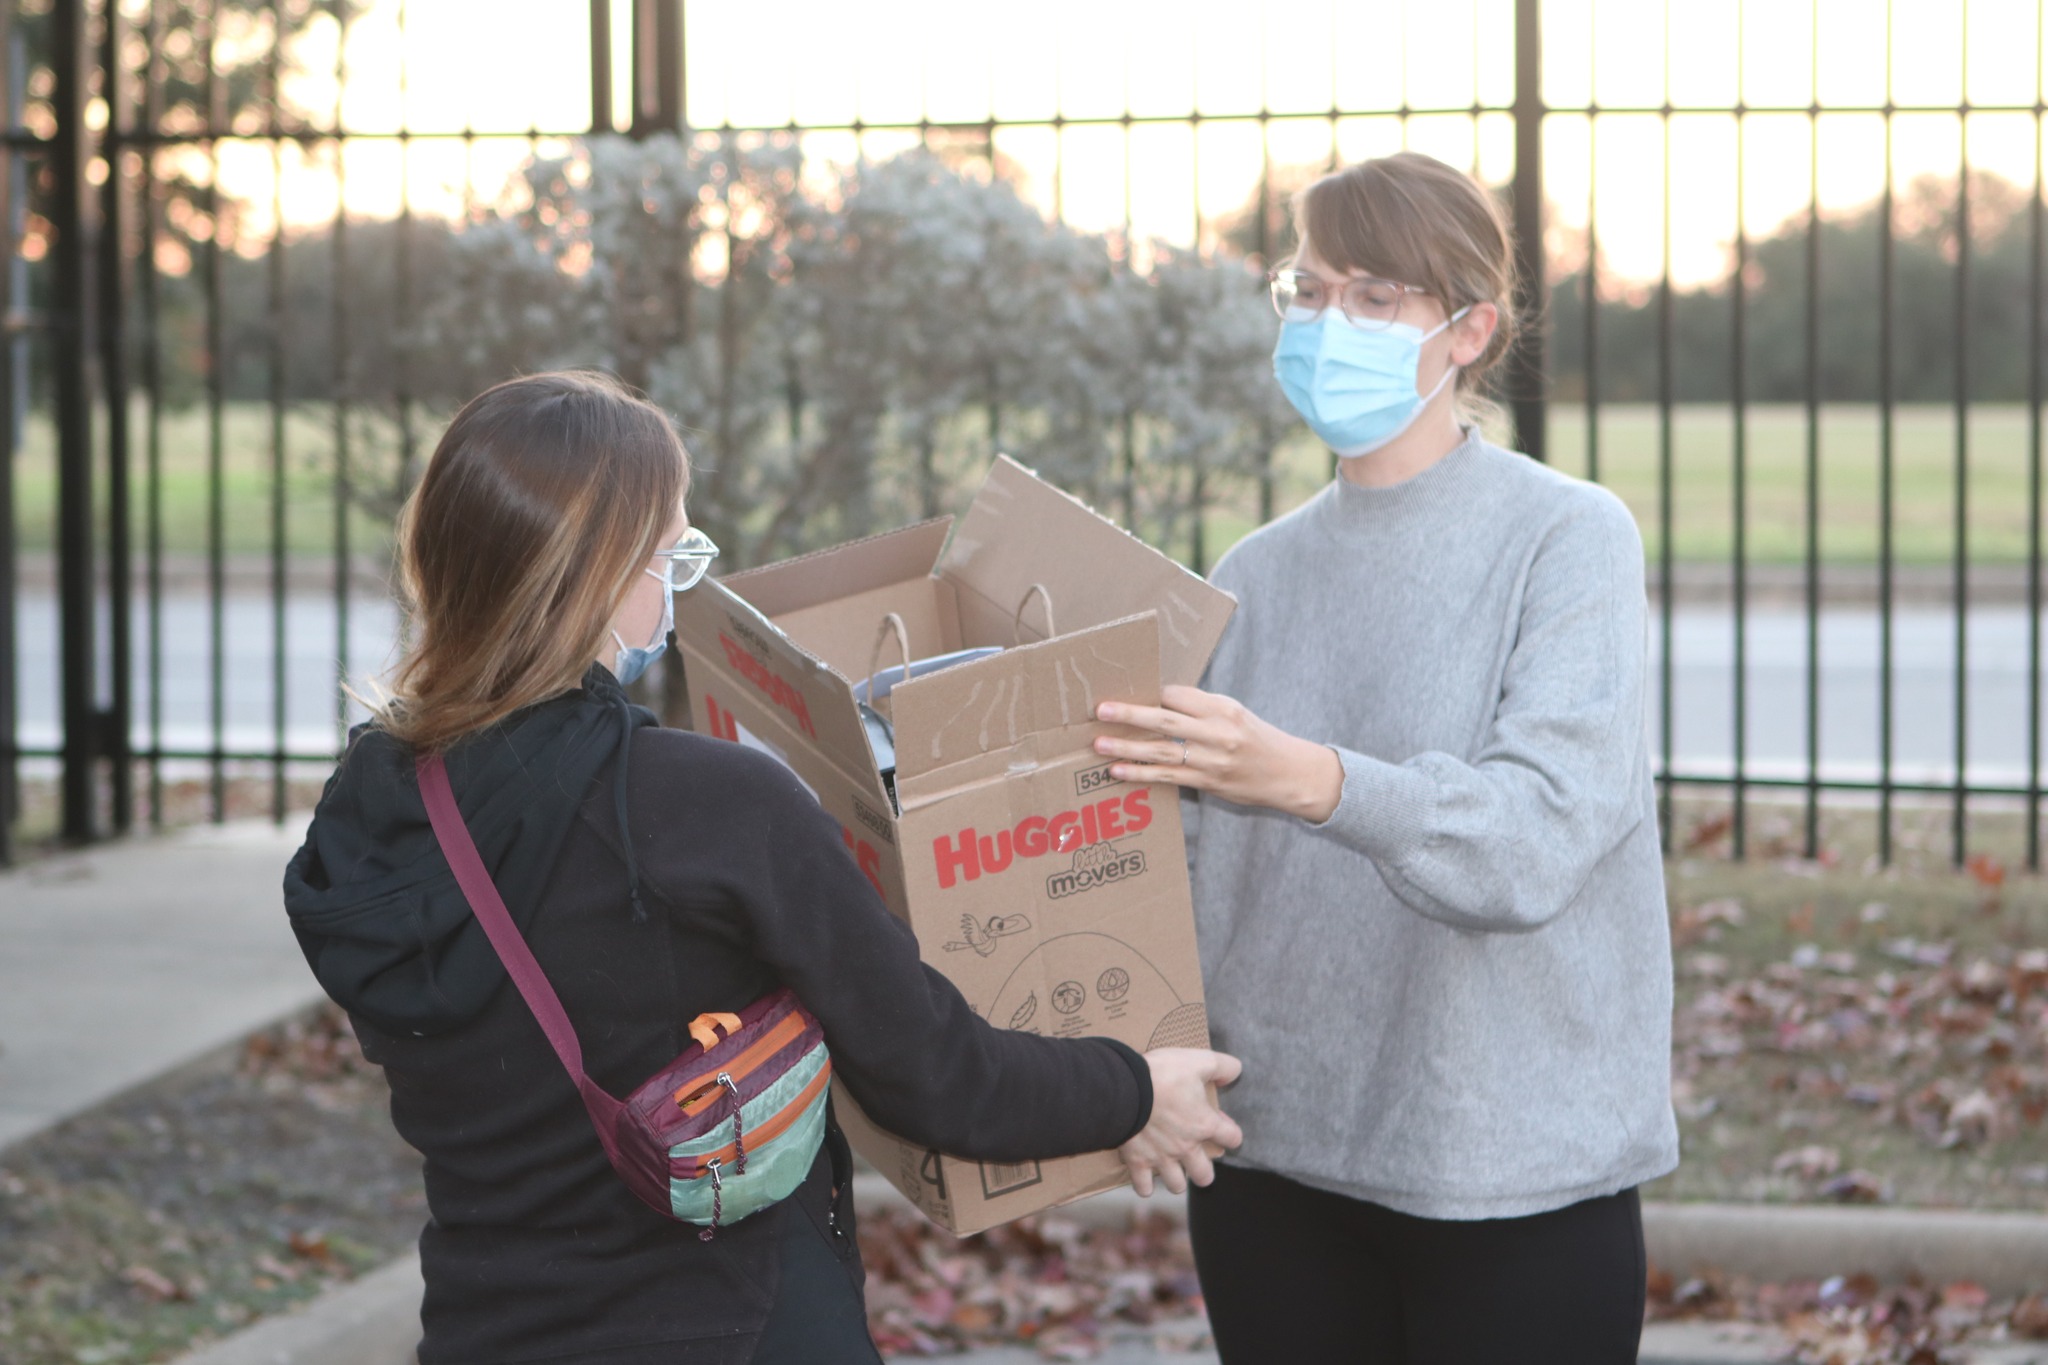 Descripción de la imagen: Una foto de una persona con un jersey gris aceptando una caja de regalos de otra persona que lleva una chaqueta negra y un bonito bolso. Ambos llevan máscaras y están de pie en el registro del aparcamiento del Refugio Familiar SAFE.